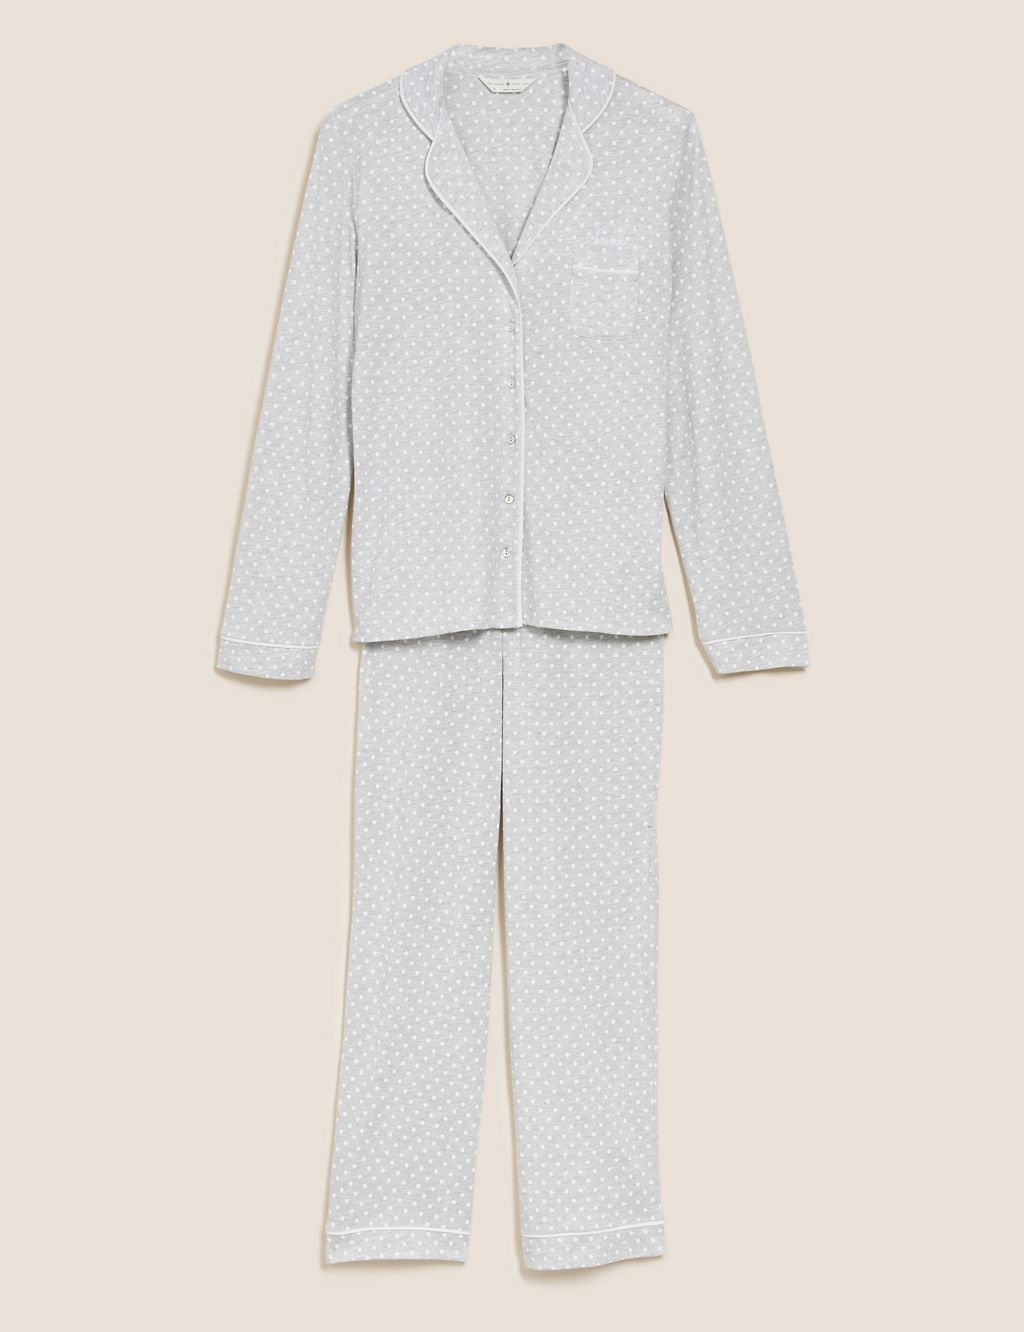 Personalised Women's Cotton Modal Pyjamas 1 of 2